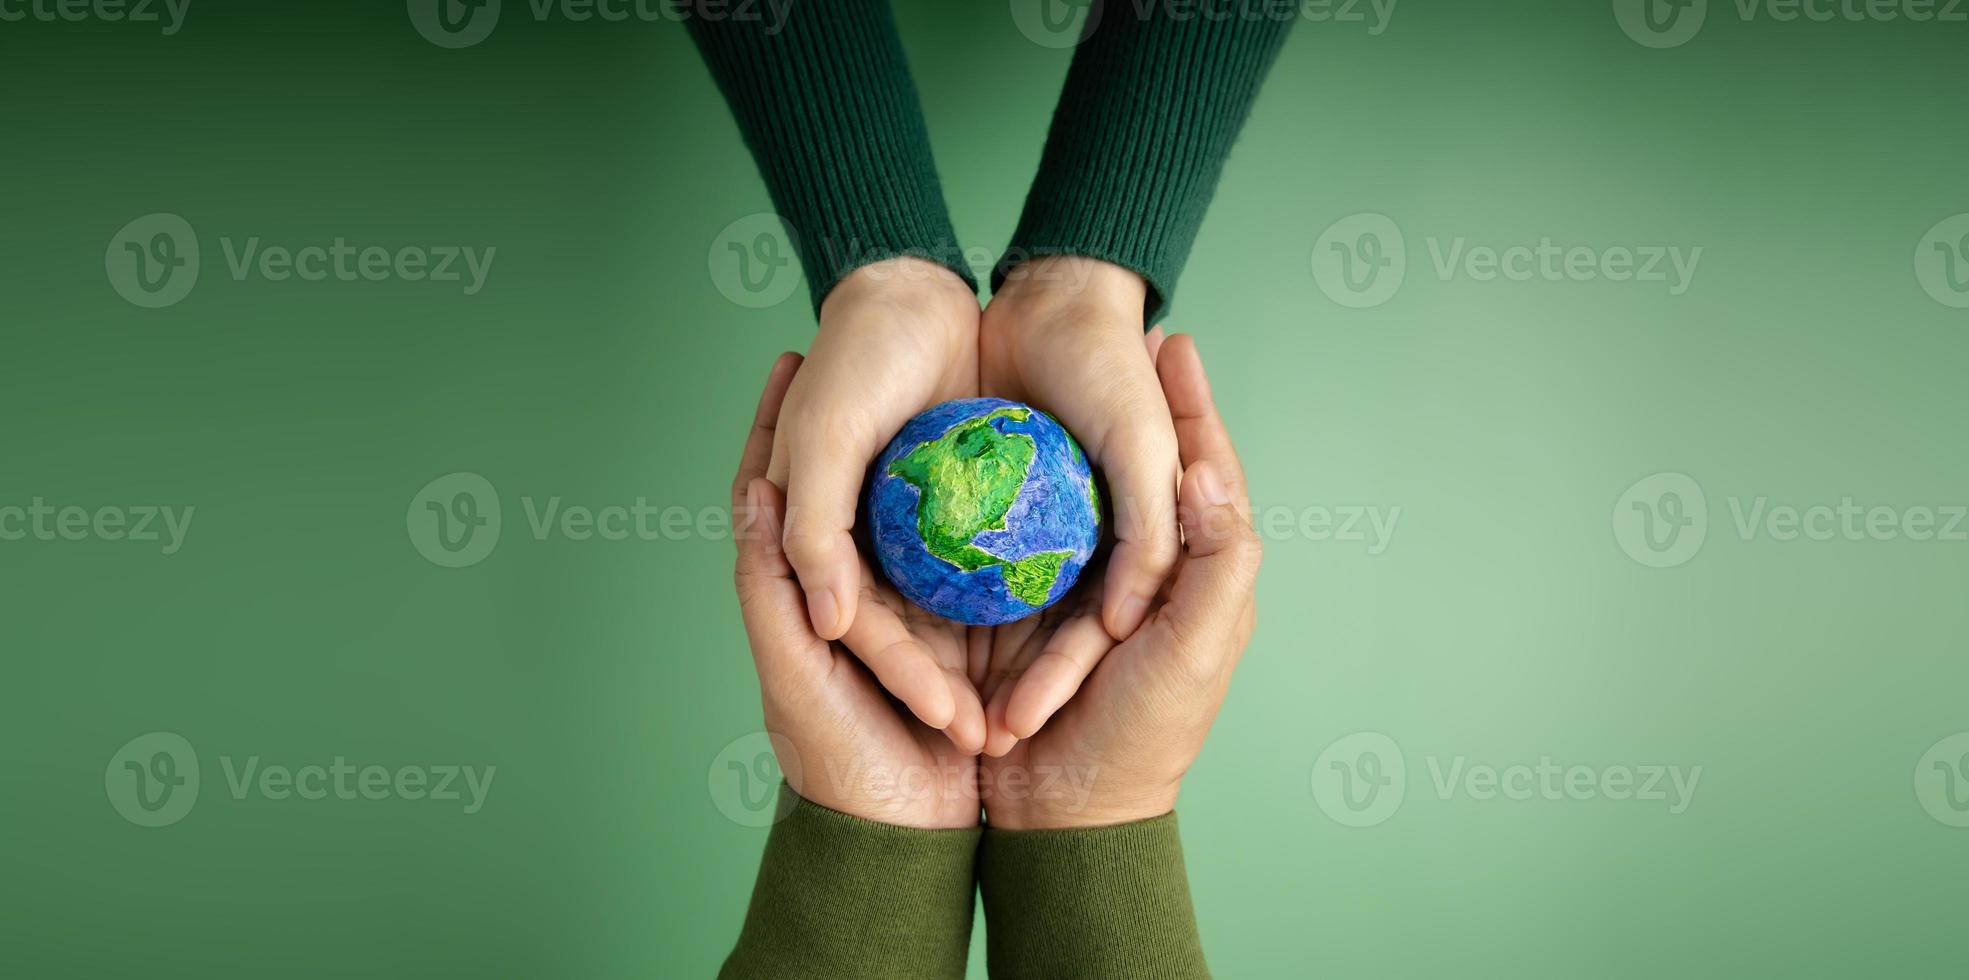 conceito de dia mundial da terra. energia verde, por exemplo, recursos renováveis e sustentáveis. cuidados ambientais. mãos de pessoas abraçando um globo feito à mão. protegendo o planeta juntos. vista do topo foto